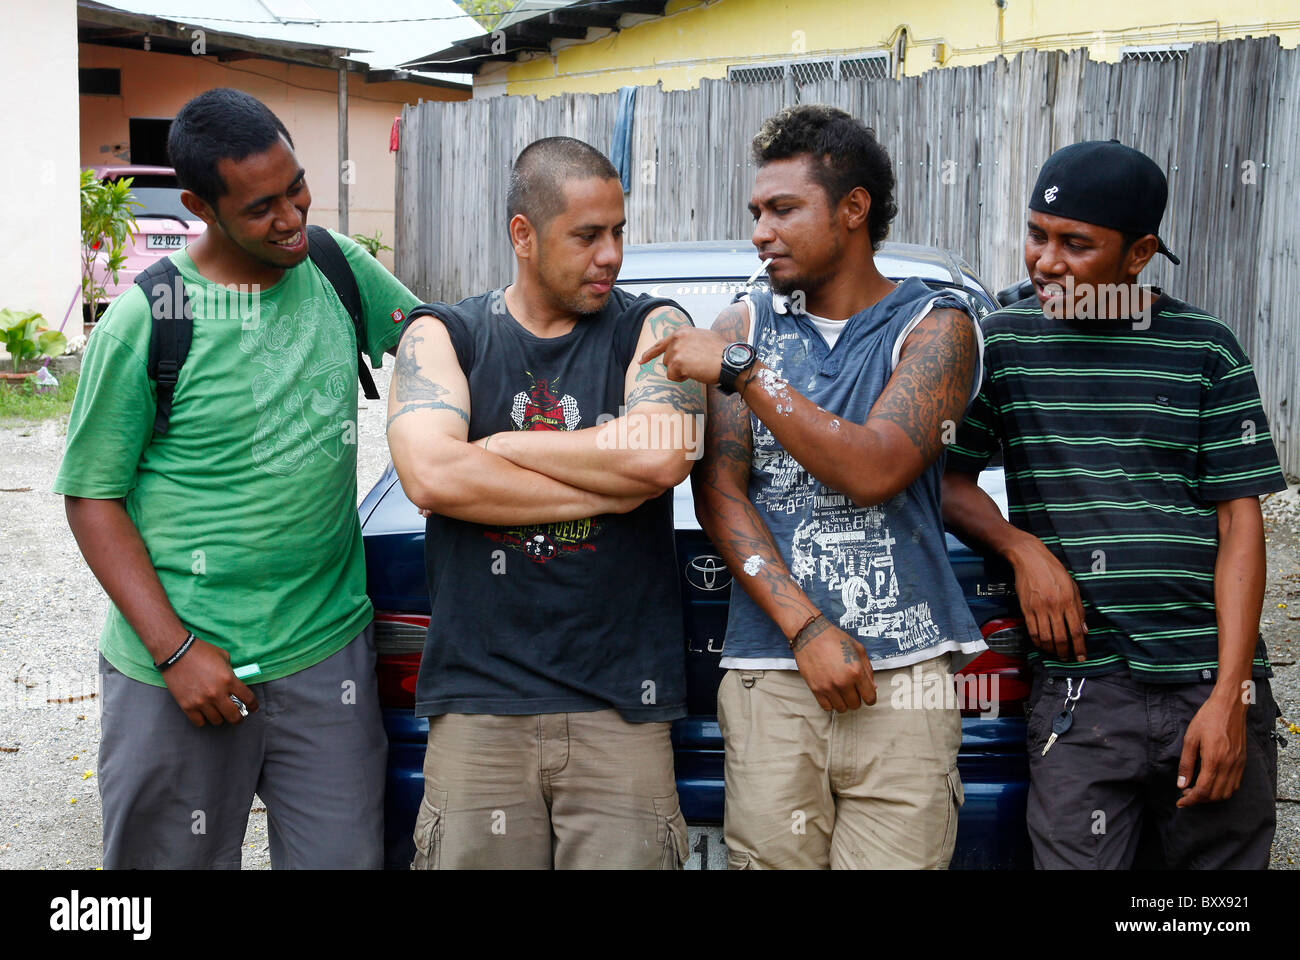 Los miembros de la tristemente célebre pandillas juveniles Seven-Seven tatoo mostrar sus marcas de identificación. Dili, Timor Leste Foto de stock